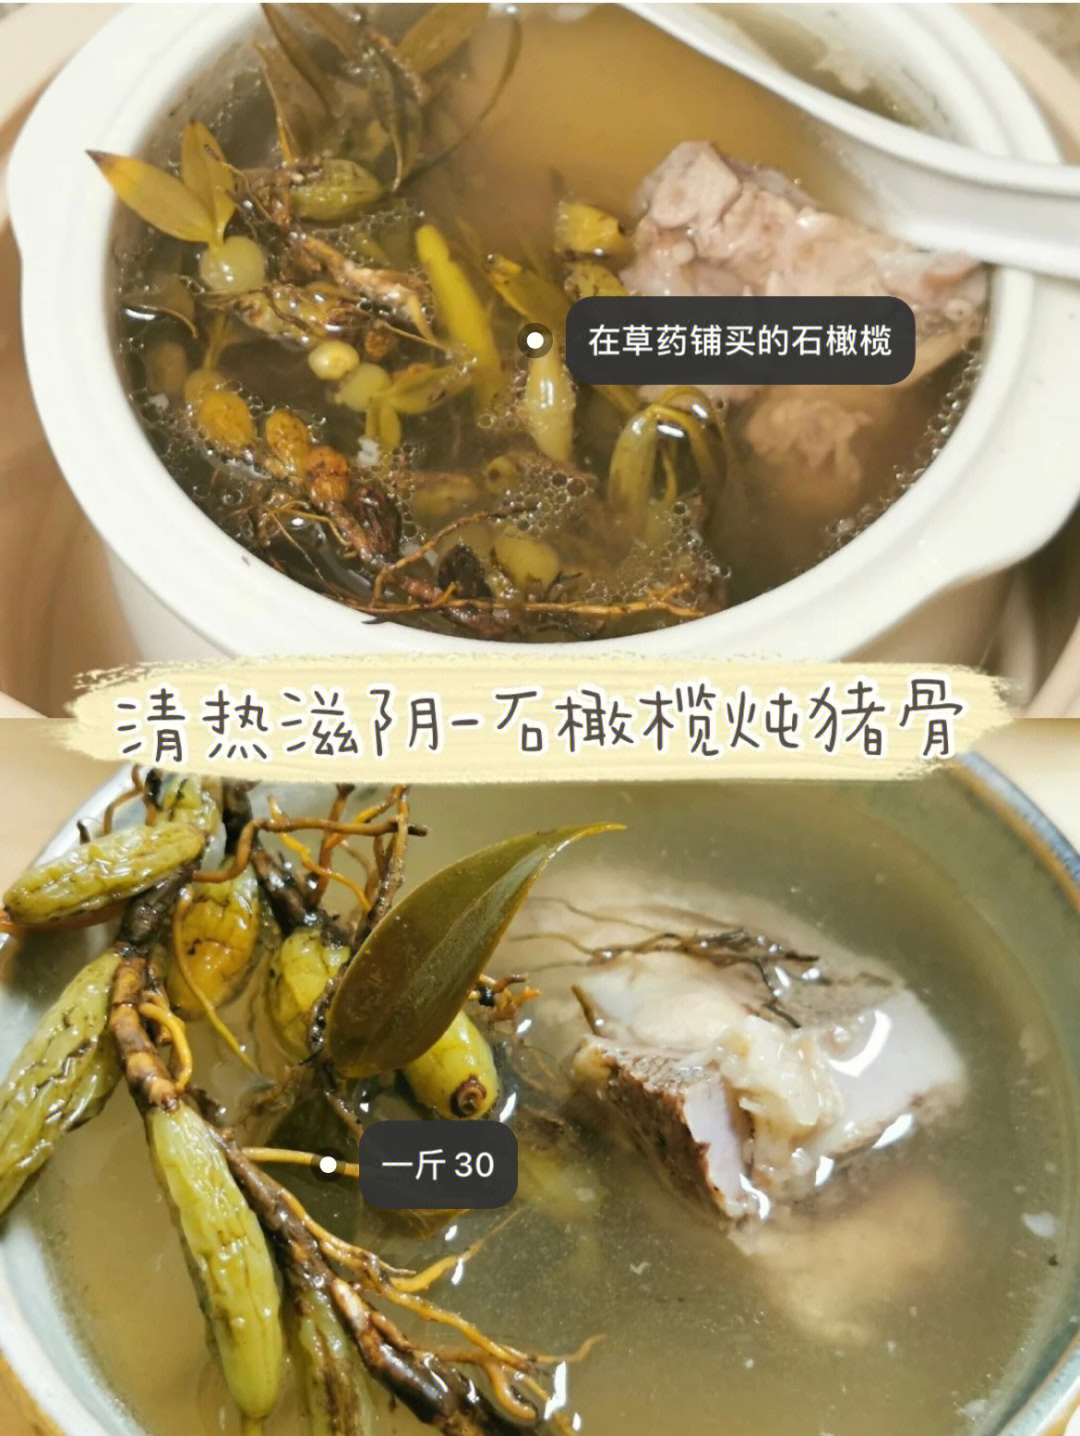 日常煲汤材料:石橄榄一把,麦冬10粒,红枣4个,猪骨